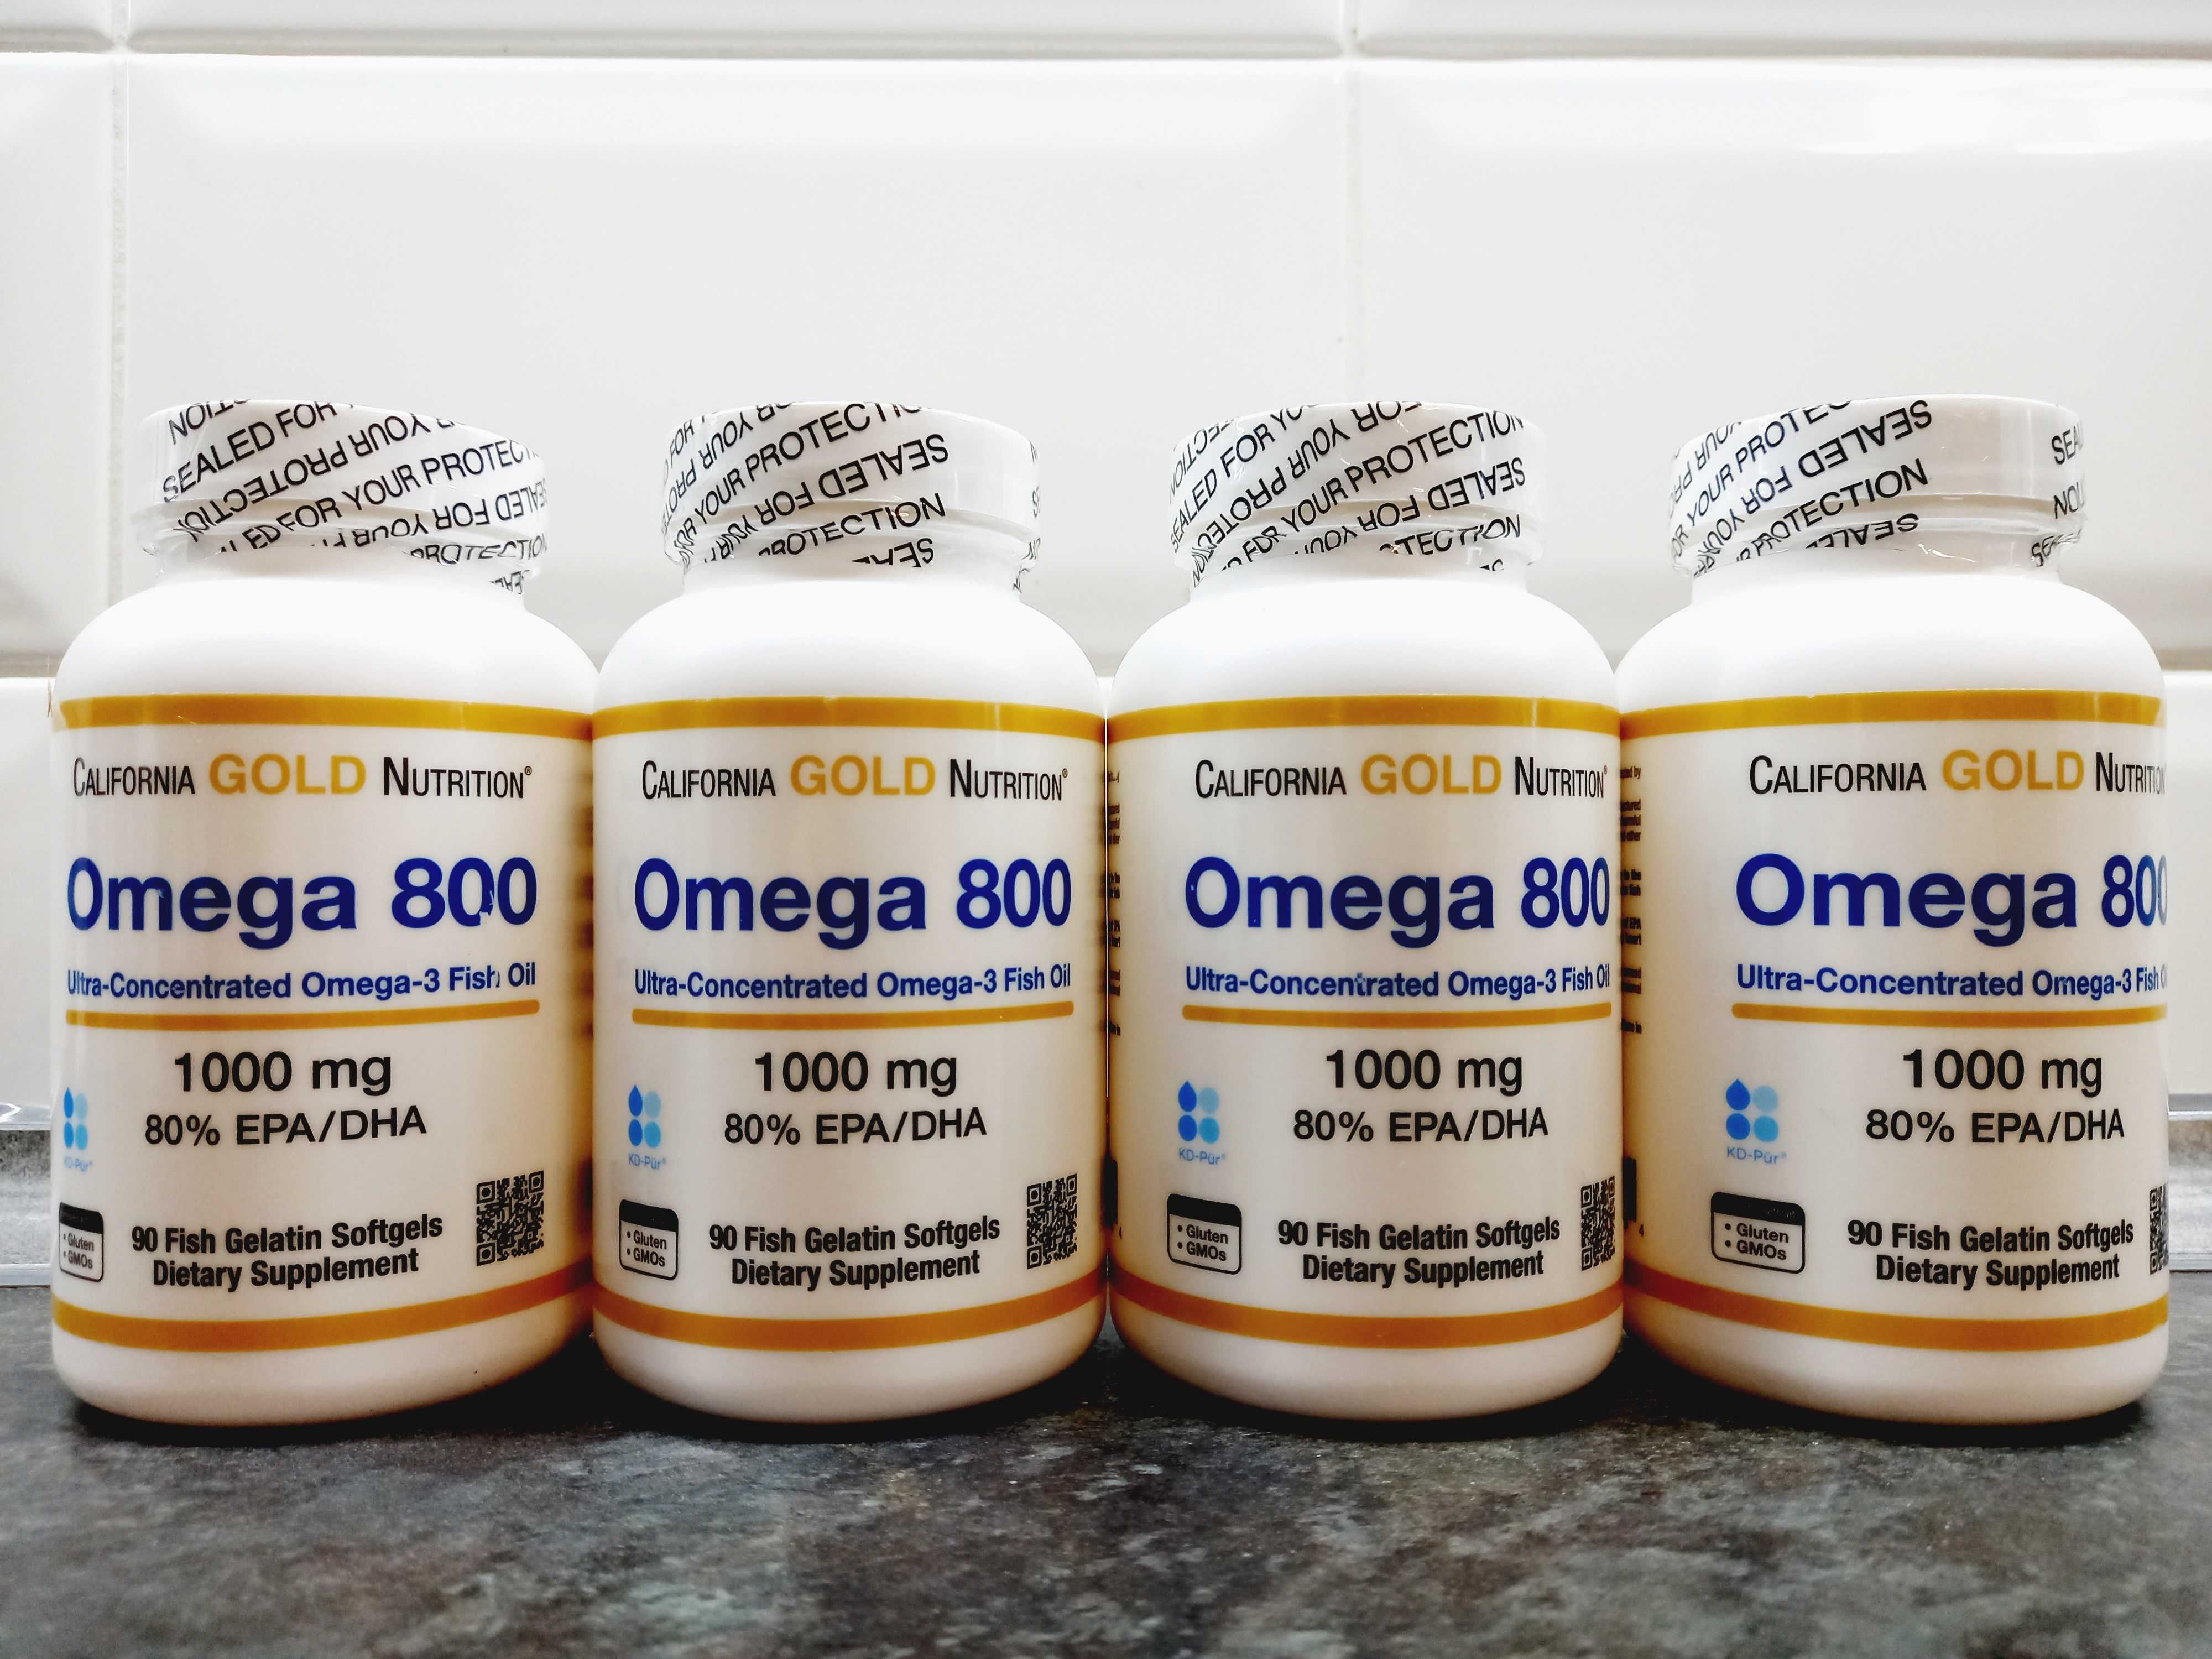 CGN, Omega 800 (90 капс.), омега-3 концентрат 480/320/40, omega-3